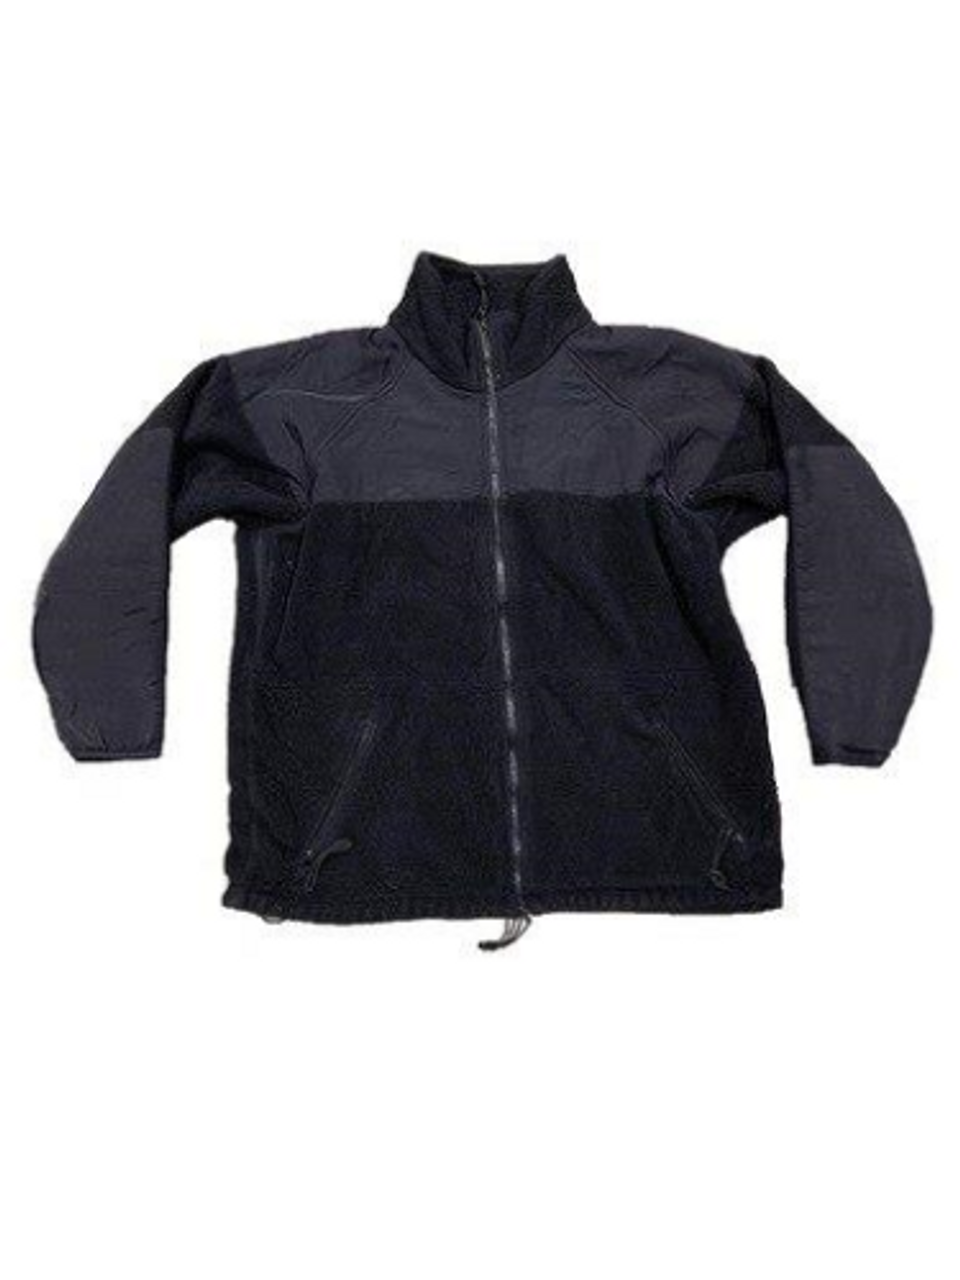 Military Black Fleece Jacket Polartec 300 - SGT TROYS